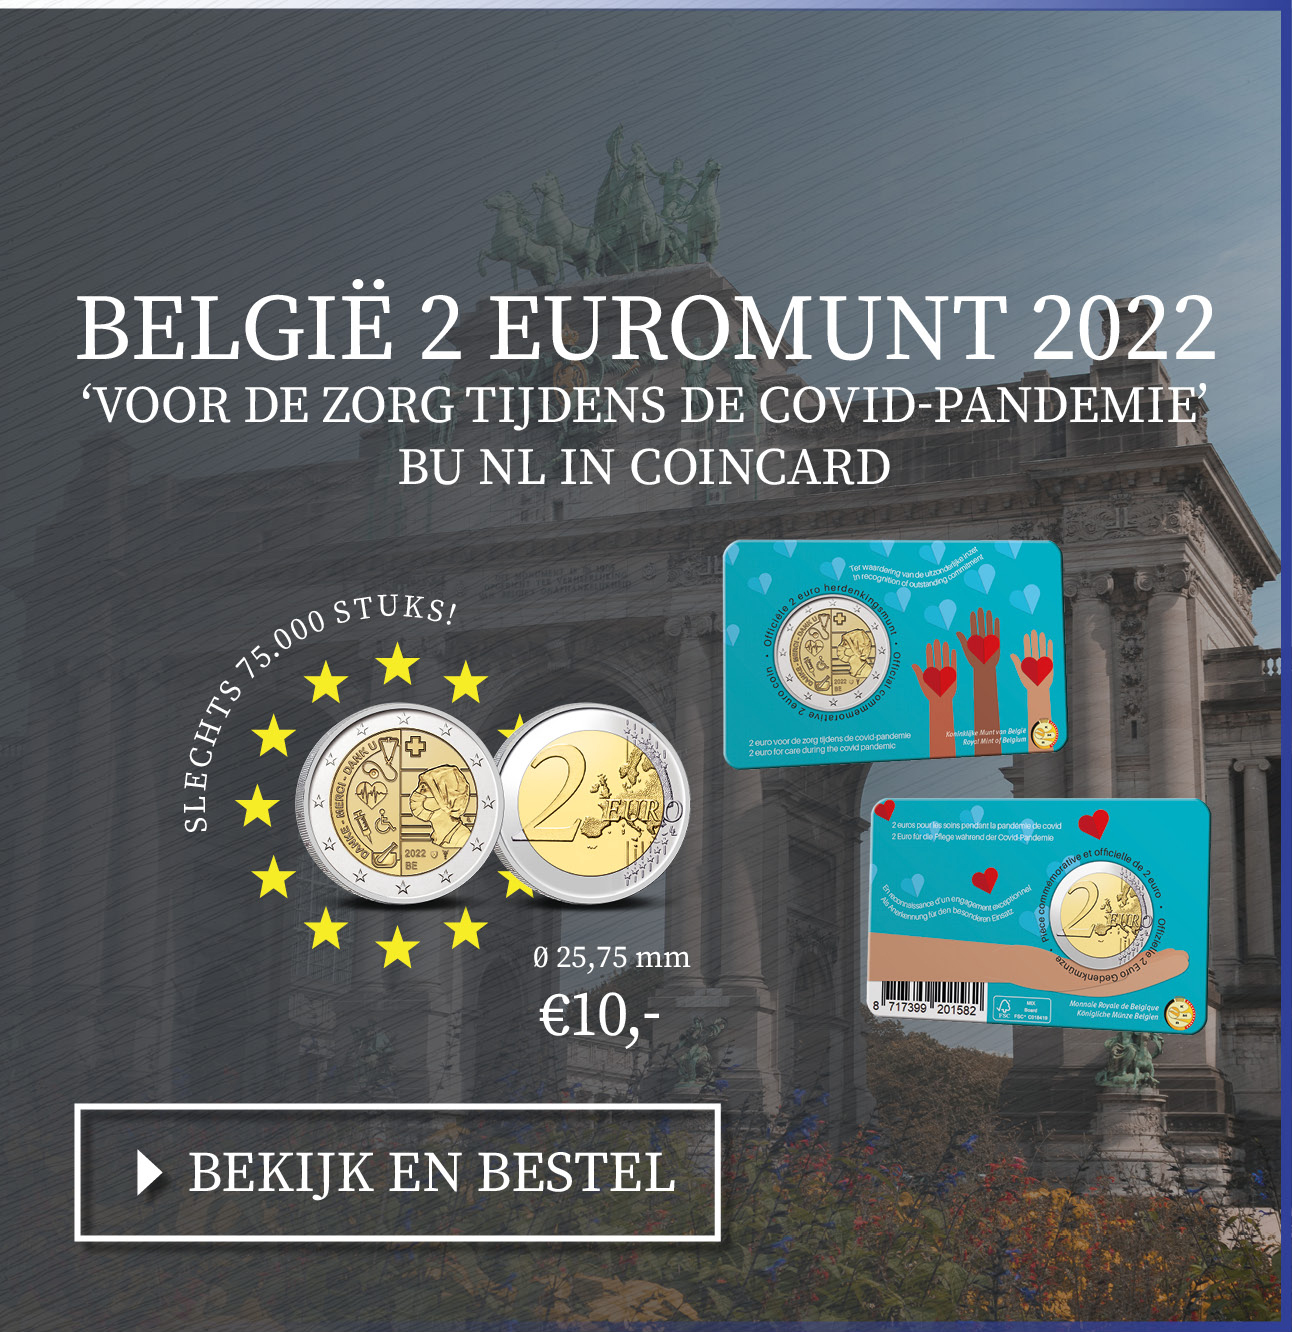 Bekijk en bestel: België 2 euromunt 2022 ‘voor de zorg tijdens de covid-pandemie’ BU in coincard NL